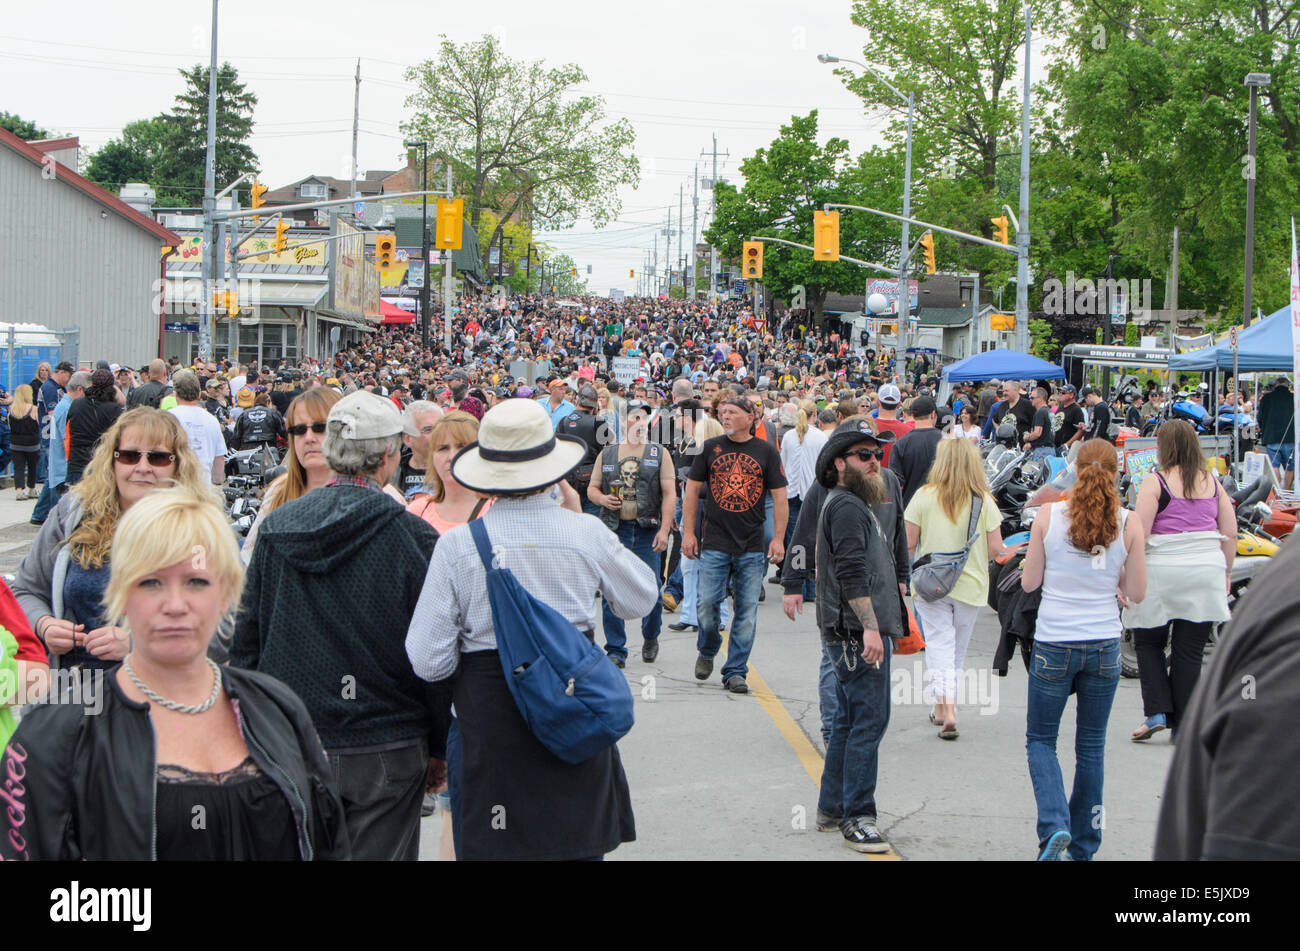 Vue de la foule assistant à la 'Vendredi 13' rallye moto à Port Dover, en Ontario, Canada. Banque D'Images